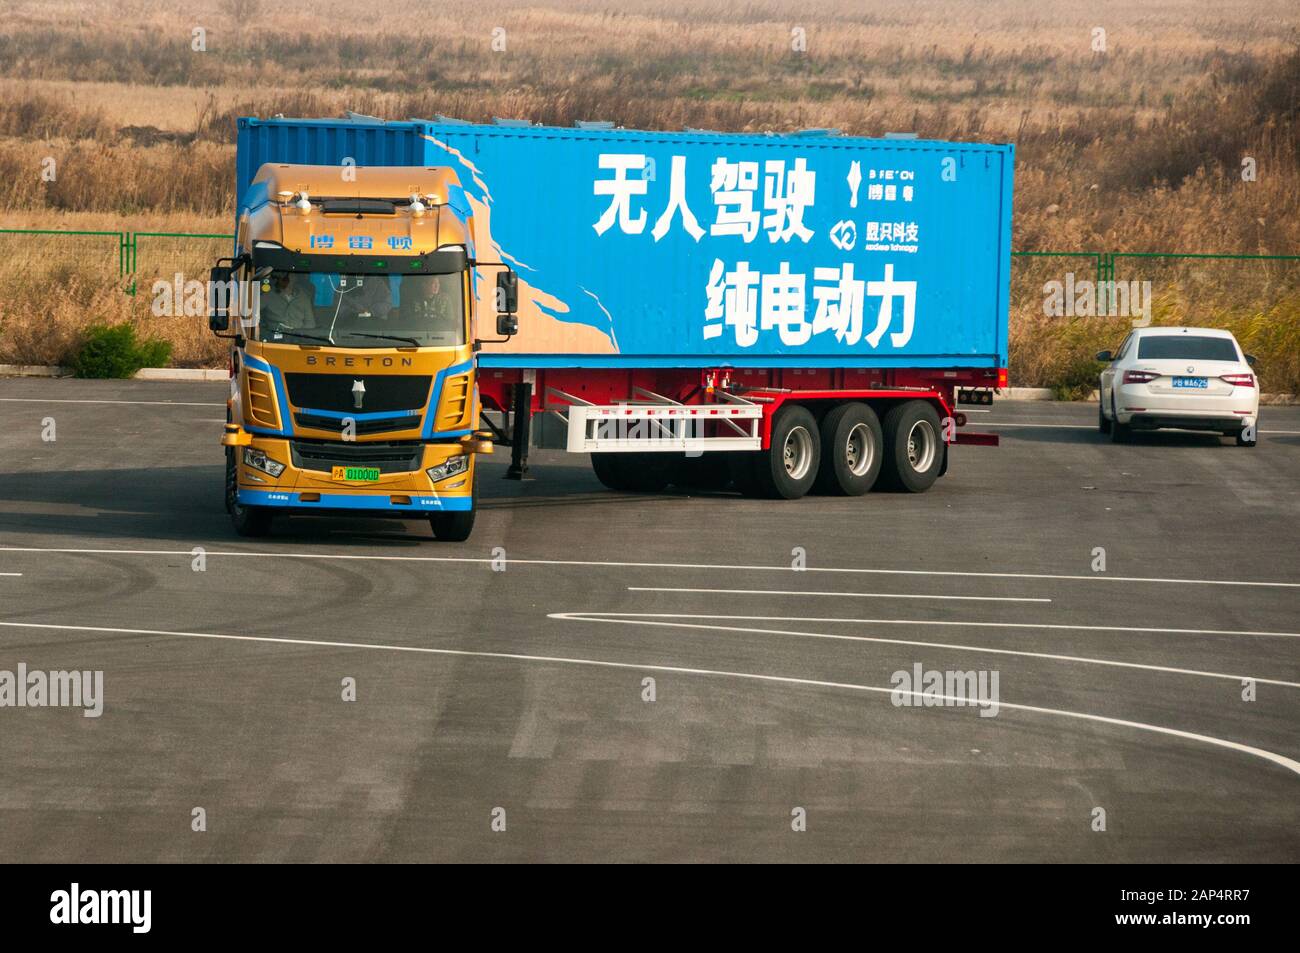 Ein selbstfahrender bretonischer L3-Elektro-Truck-Test auf dem autonomen Fahrzeugtestgelände in Lingang, Shanghai, der speziell für den Kommenbetrieb konzipiert ist Stockfoto